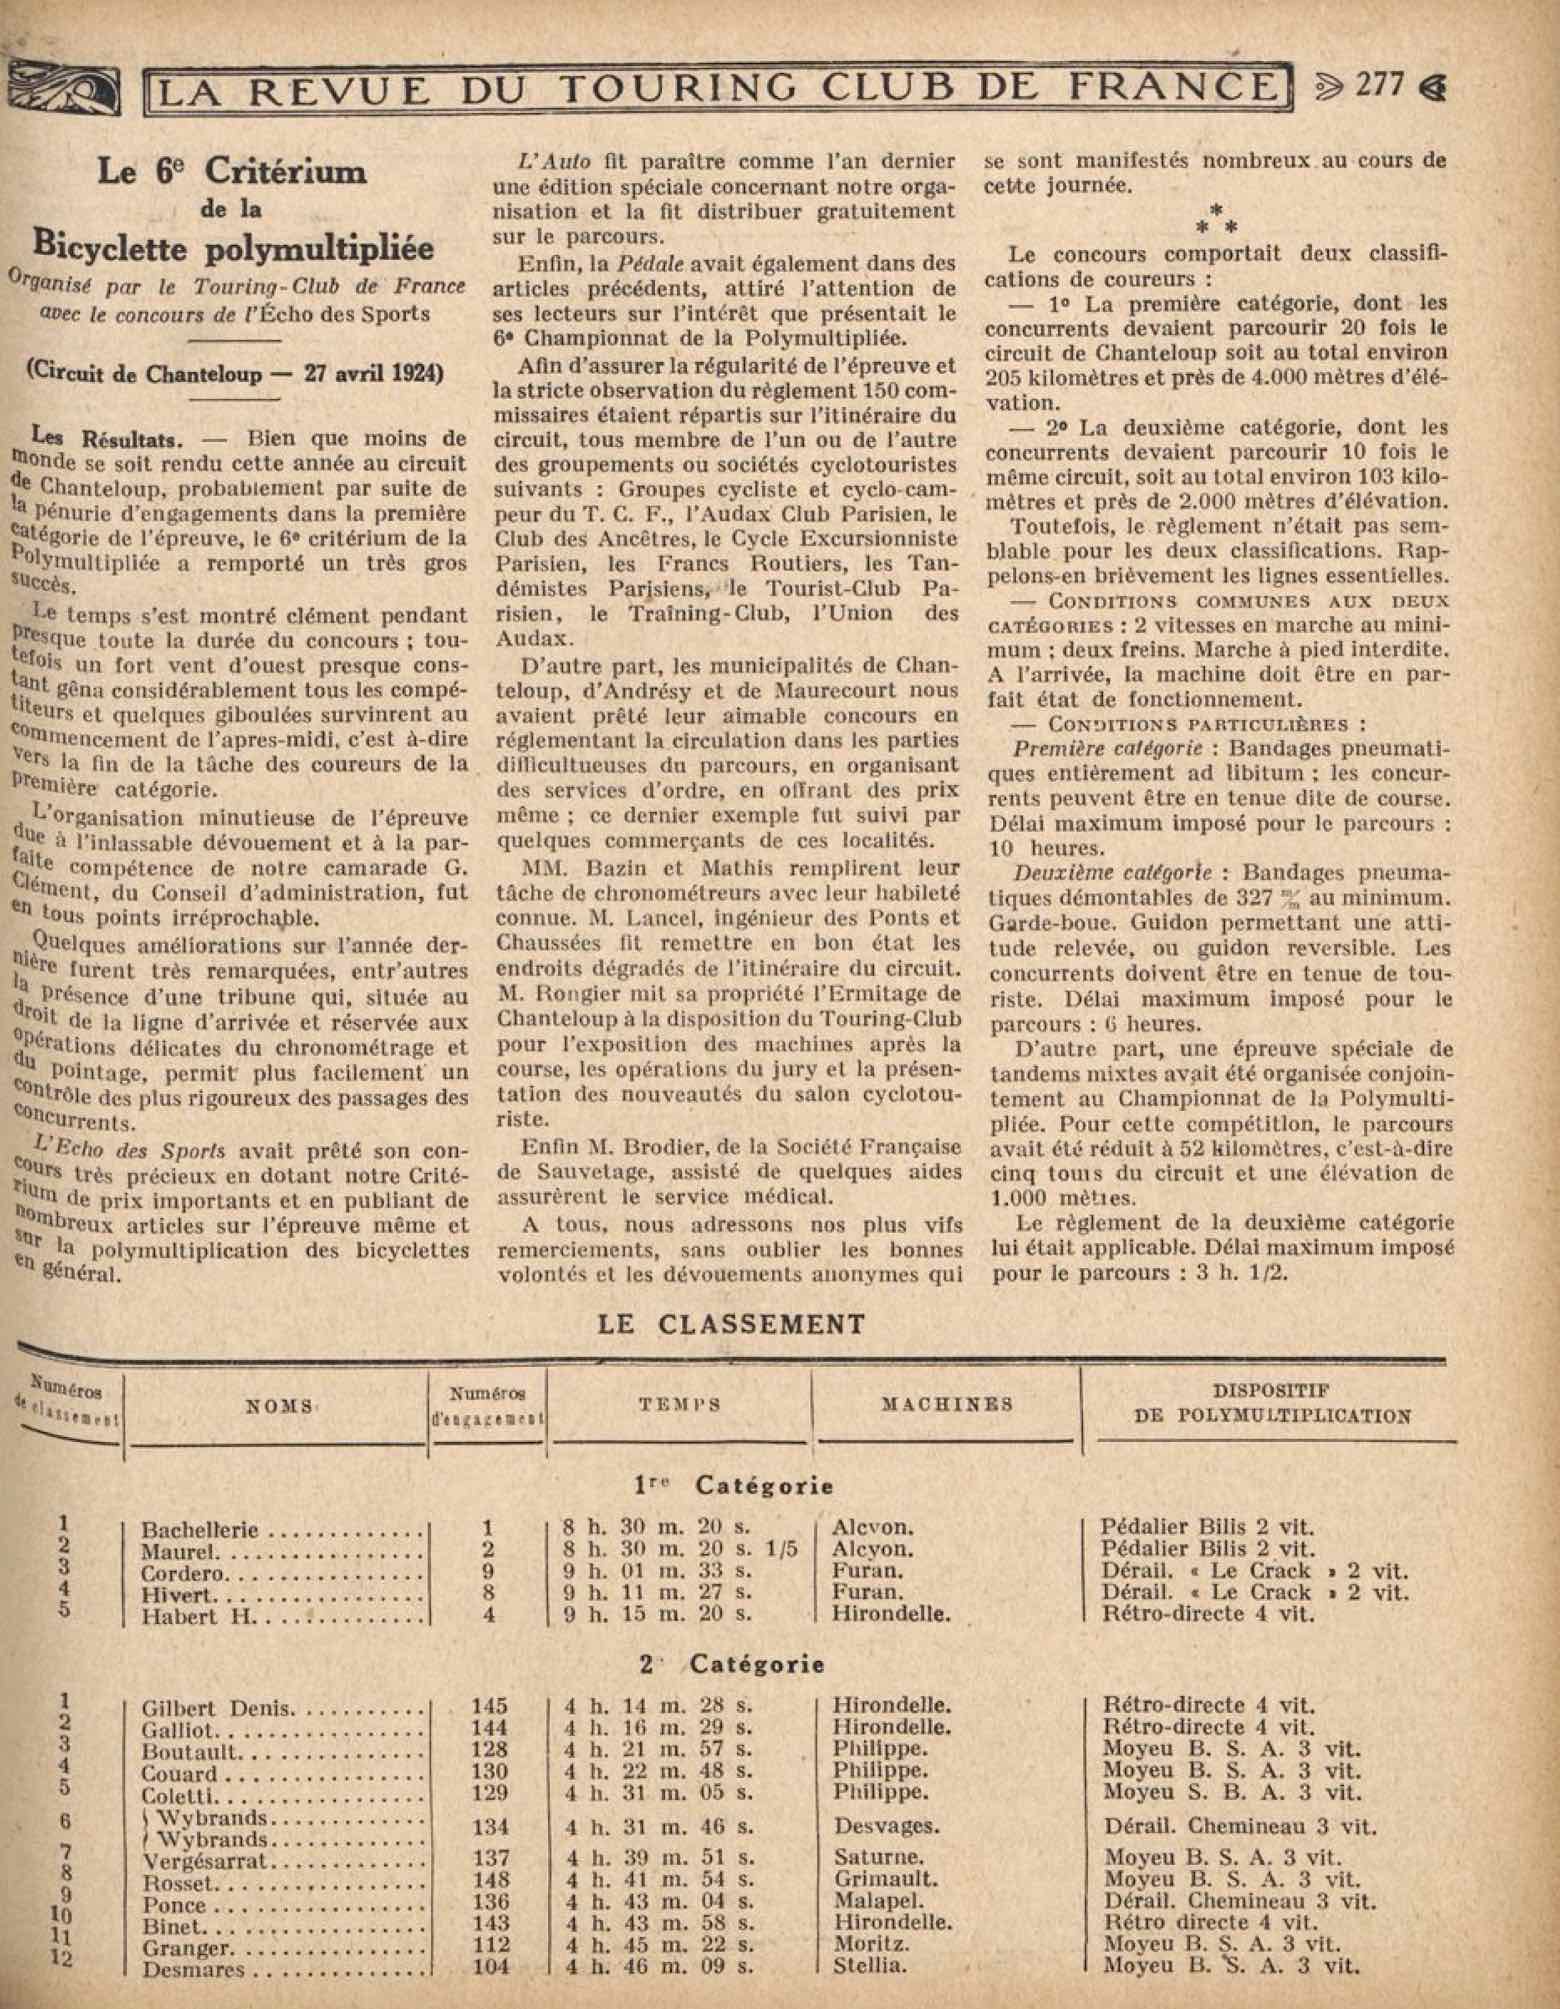 T.C.F. Revue Mensuelle June 1924 - Le 6e Criterium de la Bicyclette polymultipliee scan 1 main image